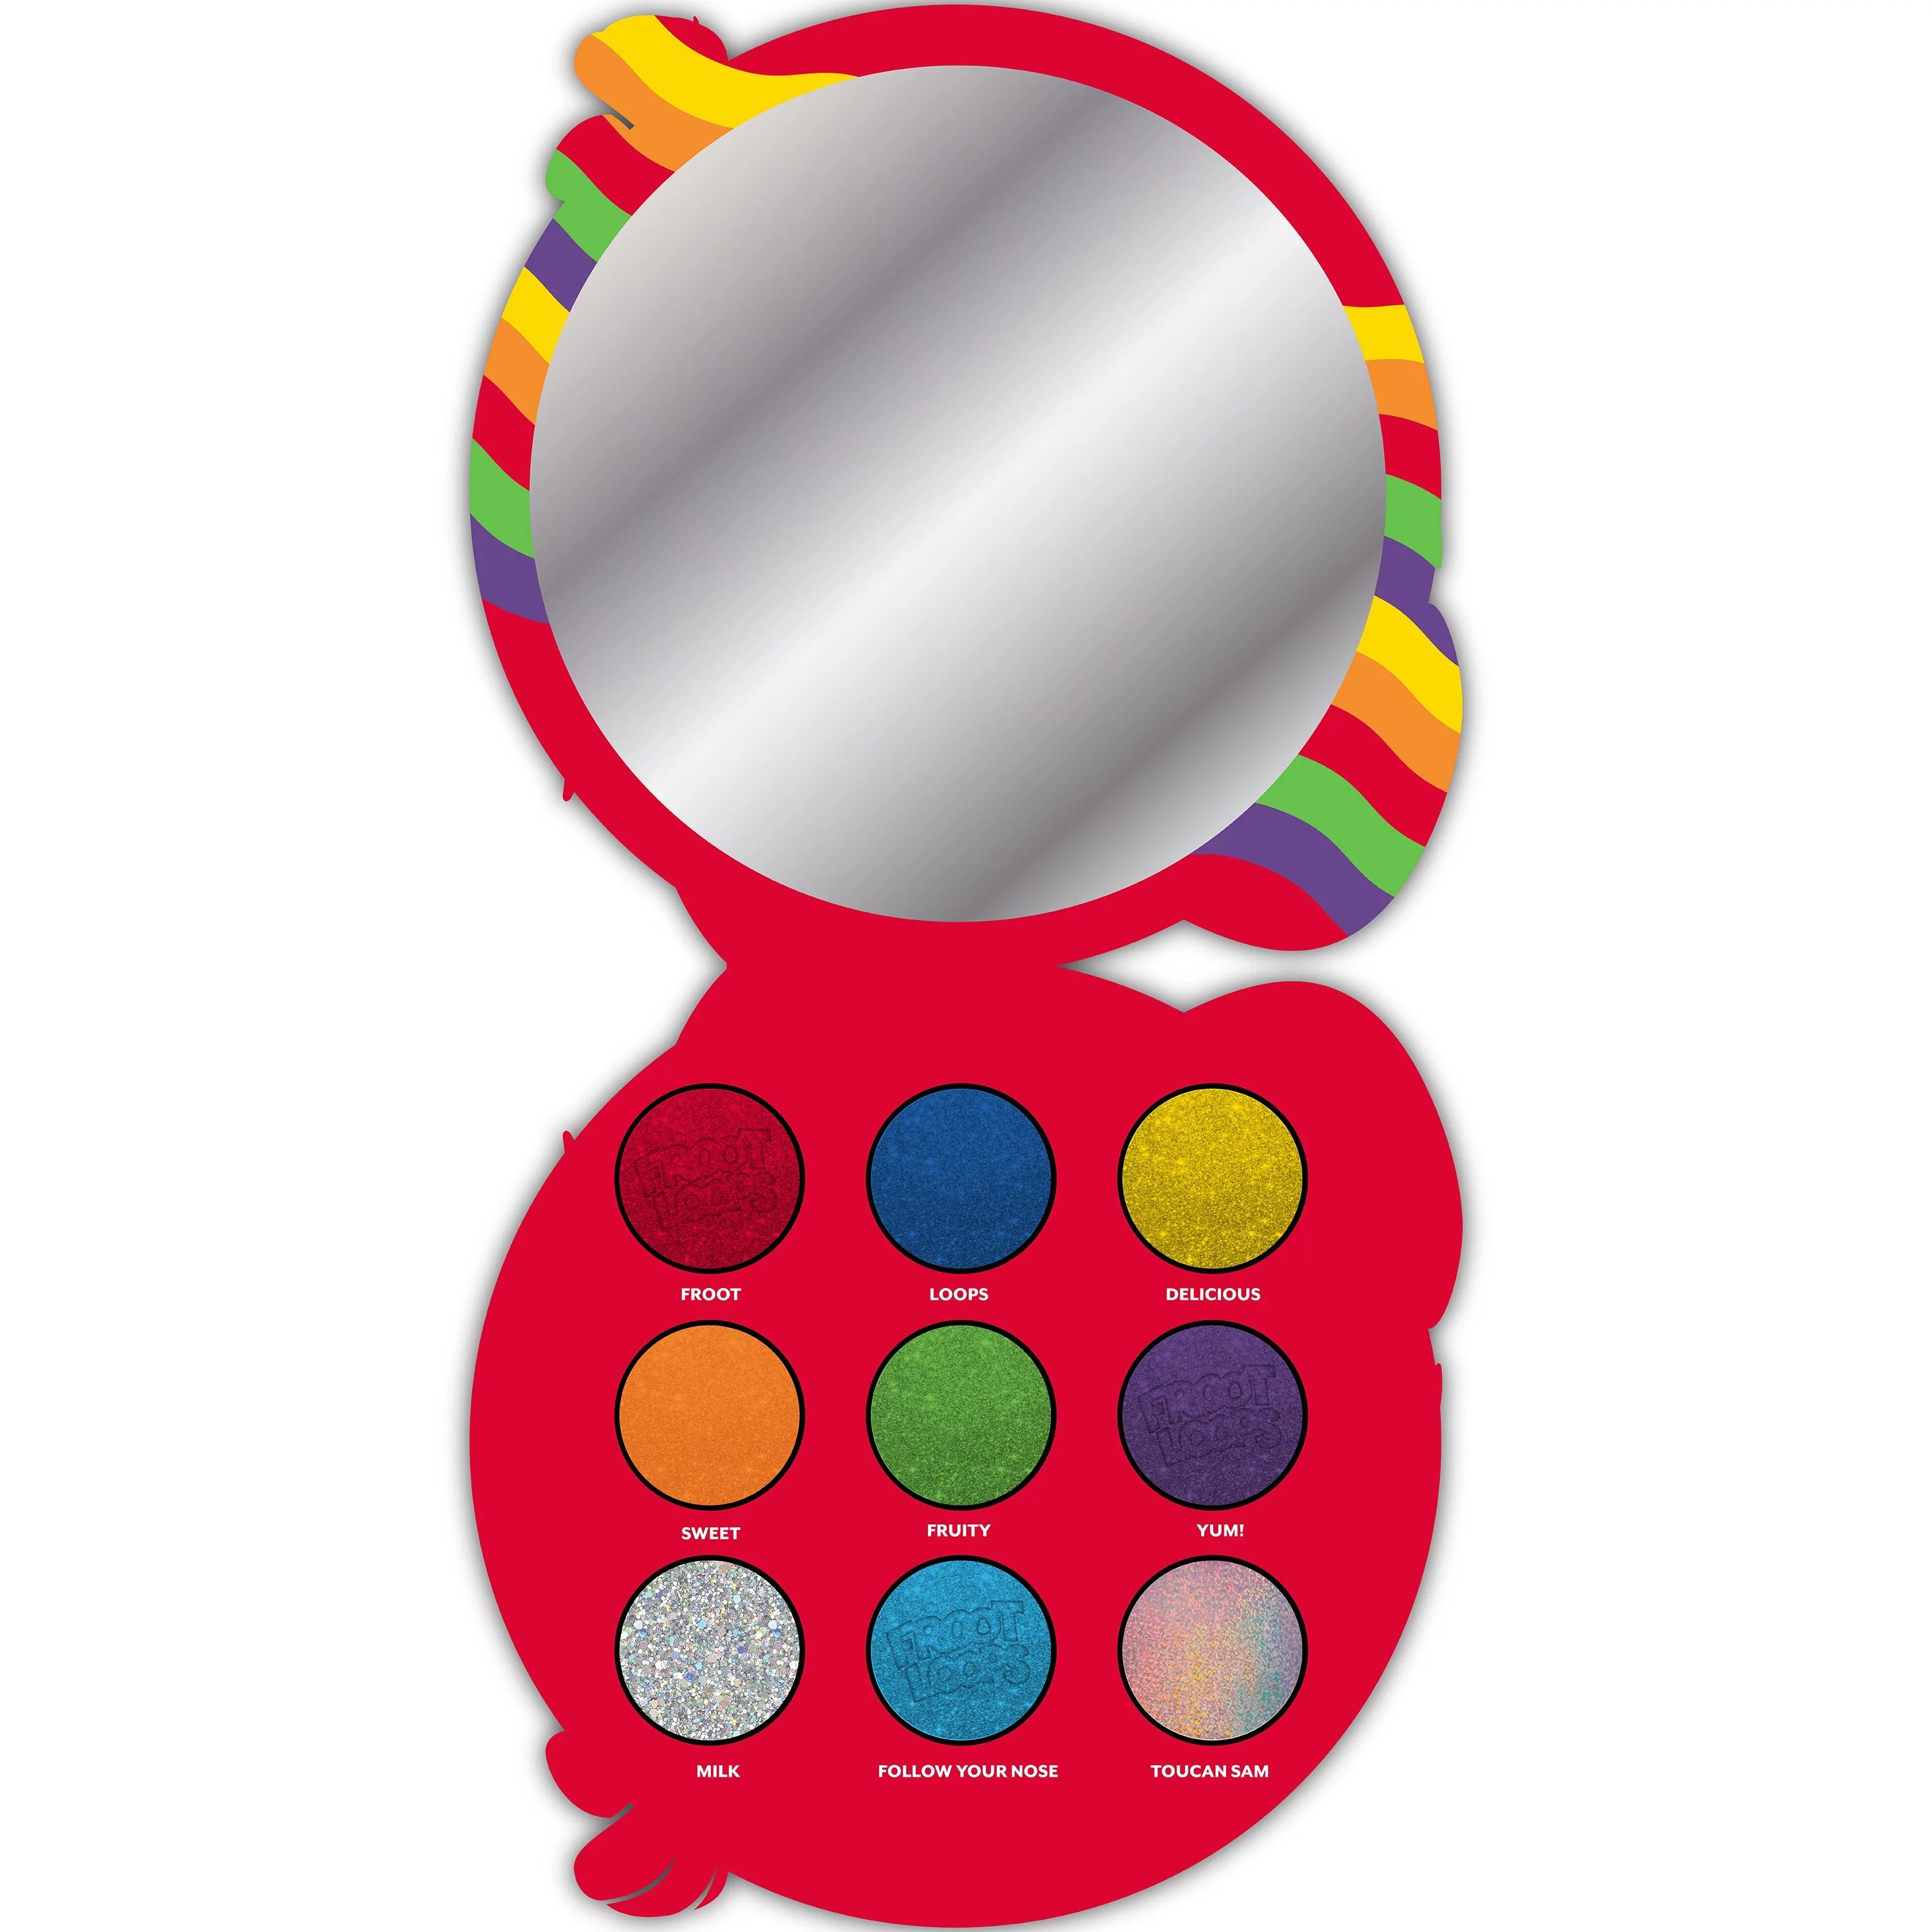 Fruit Loops Eyeshadow Pallette With Mirror, 9 colors, 6g | Walmart (US)